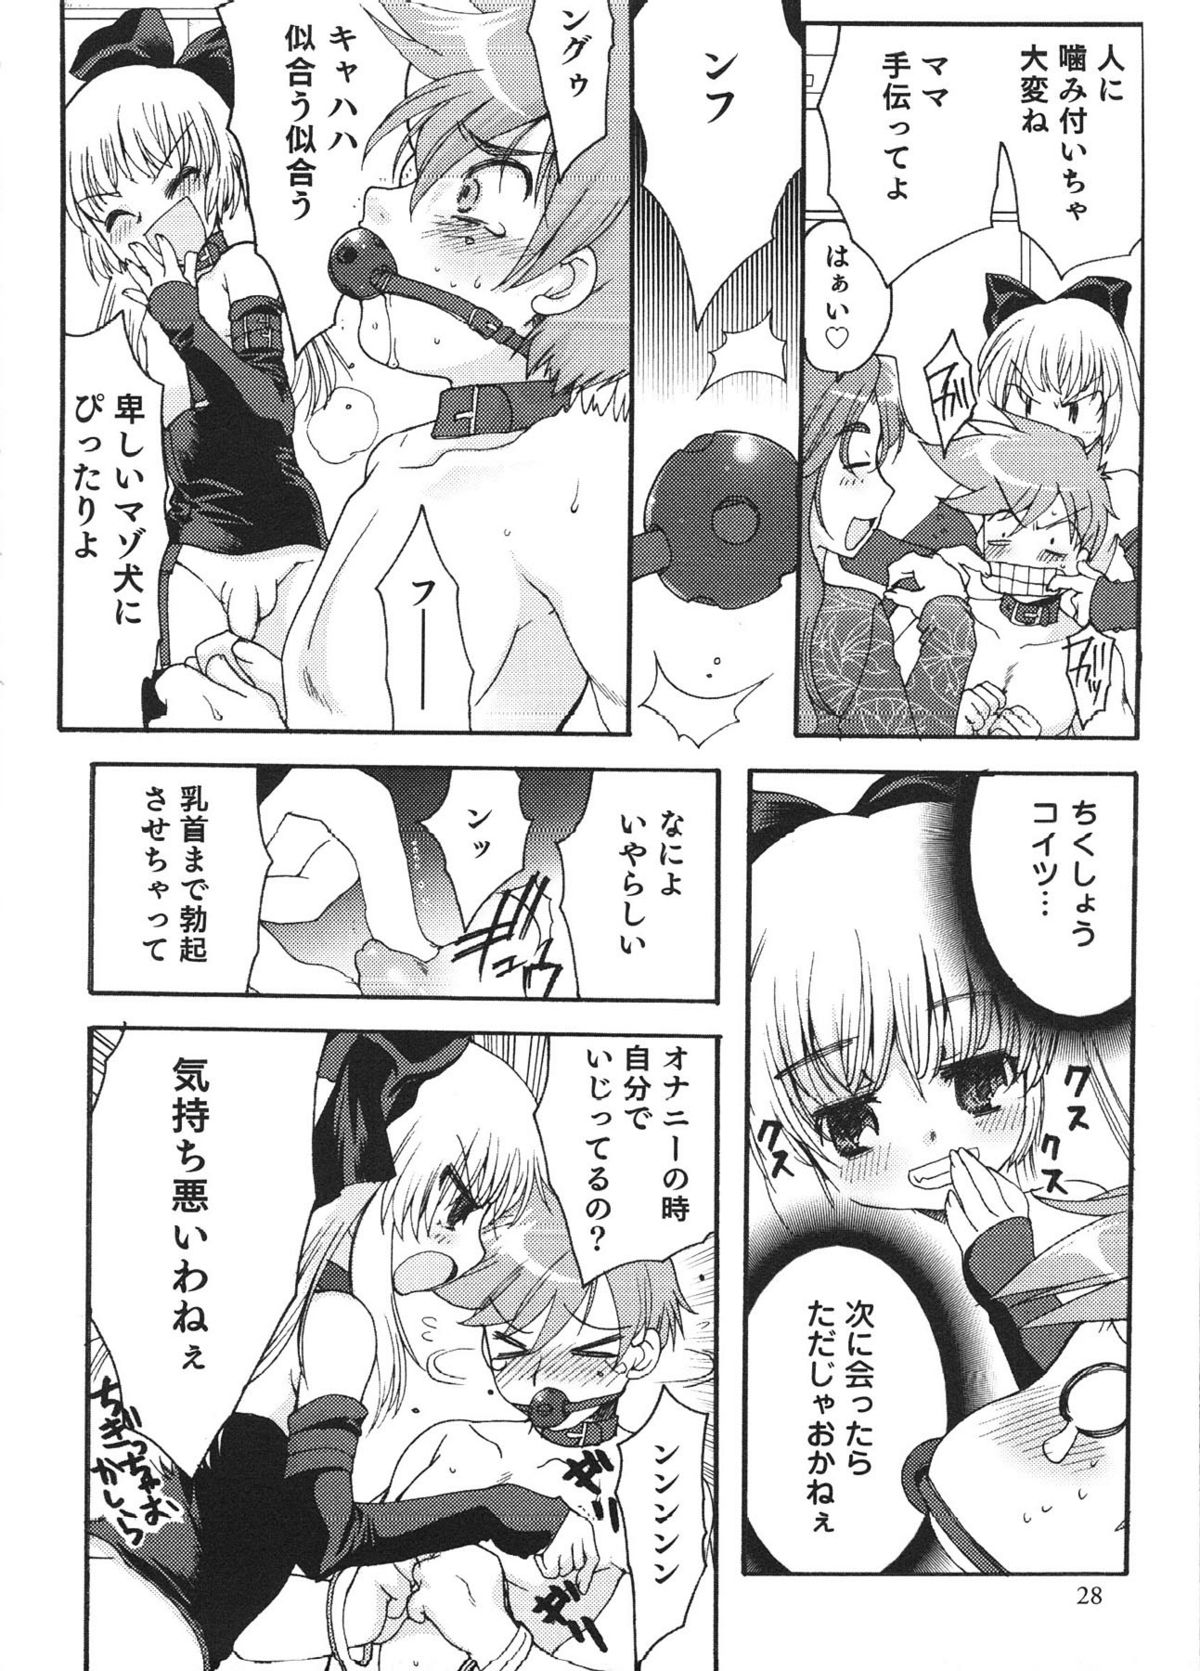 [Anthology] Ero Shota 12 - Sweet Maple Boys page 27 full